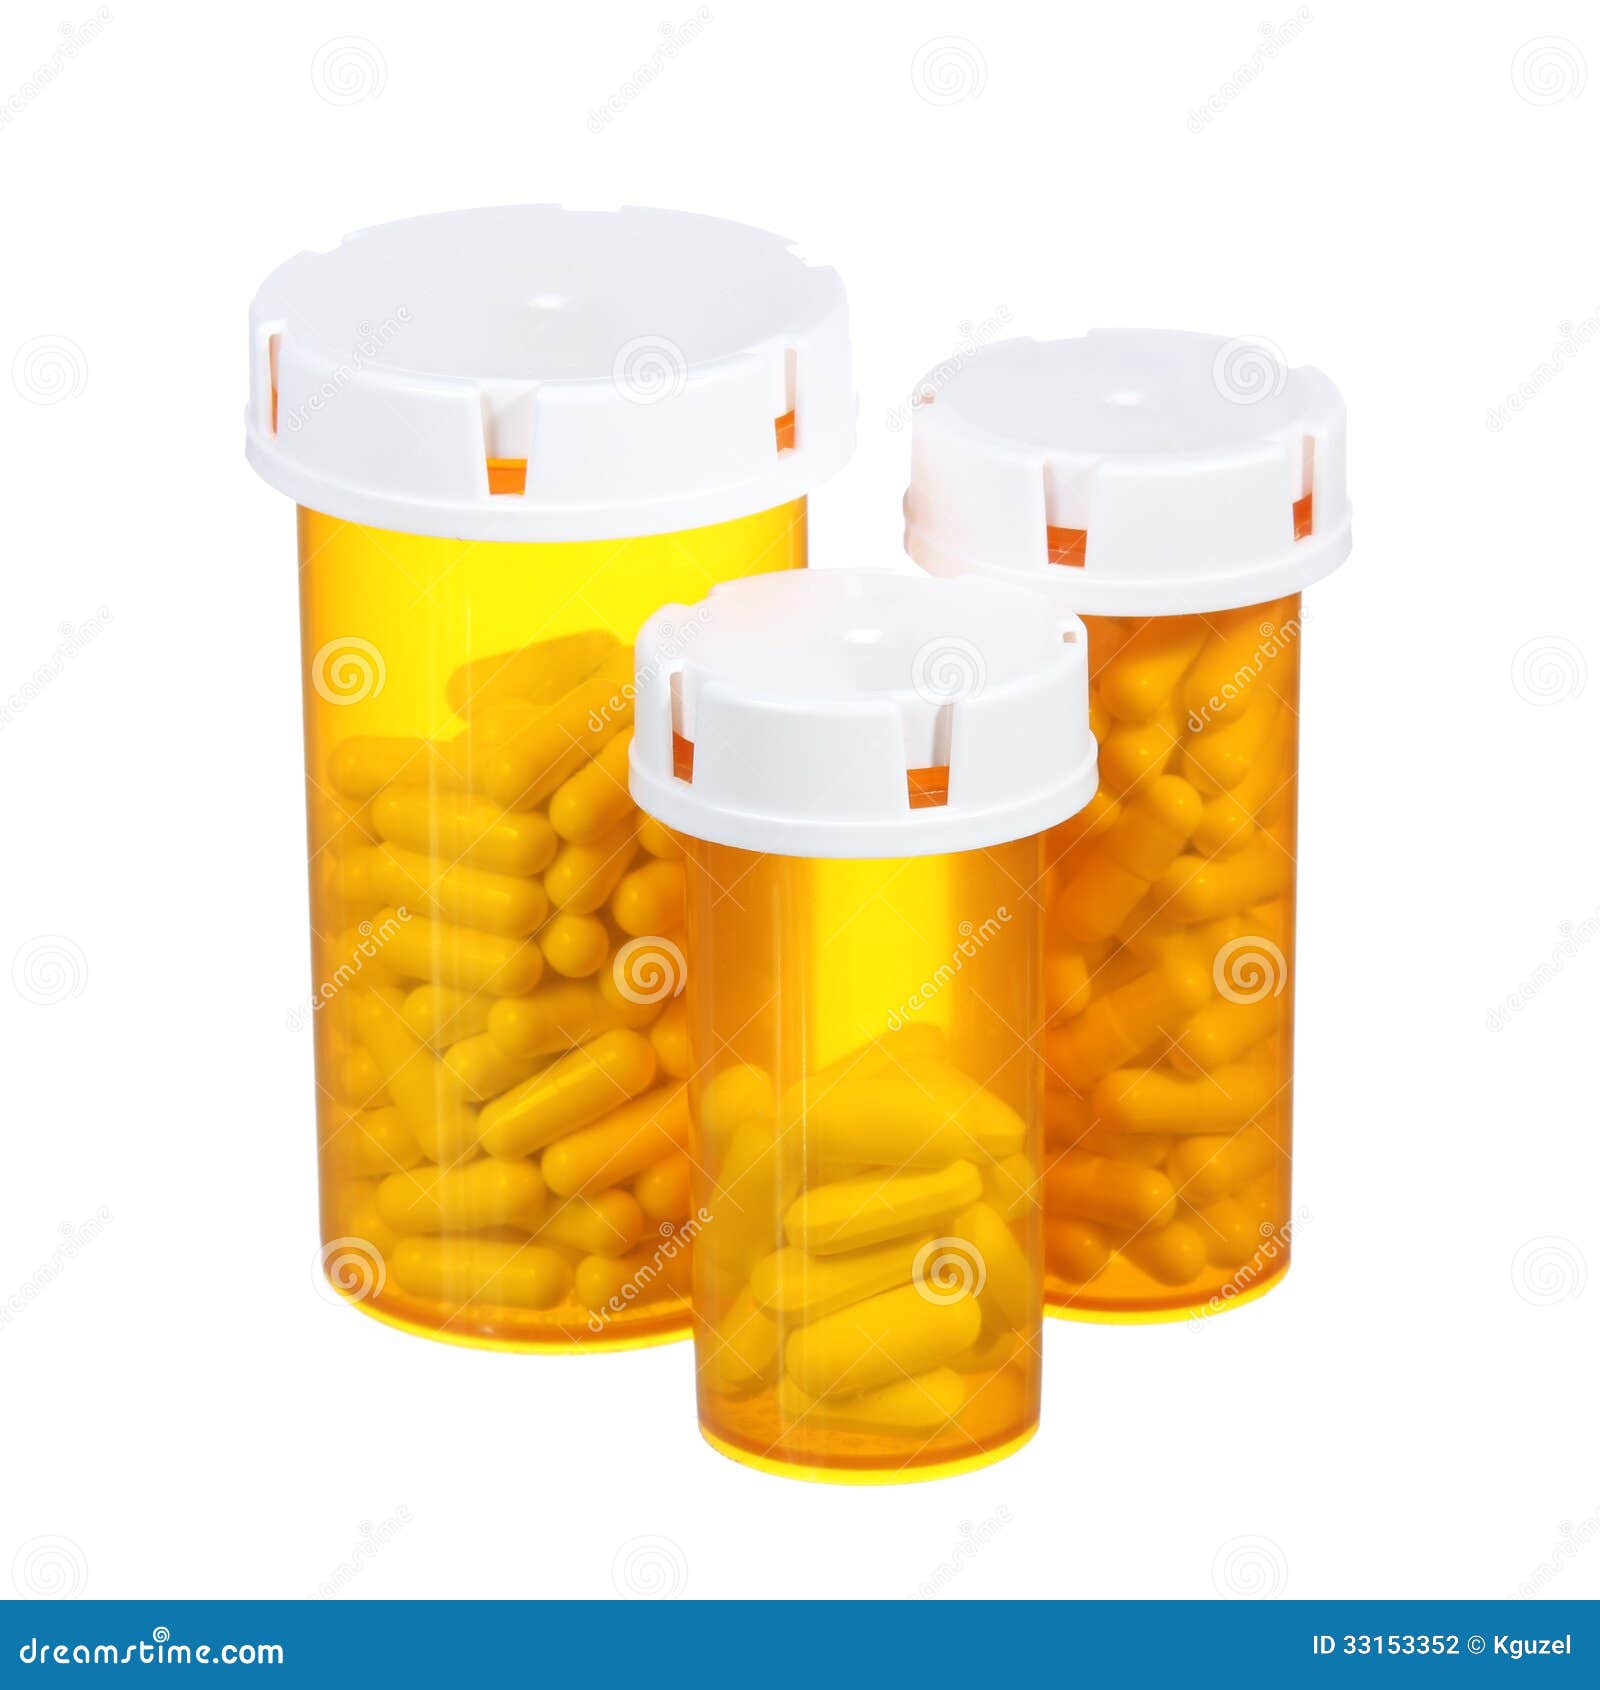 pill bottles  on white background